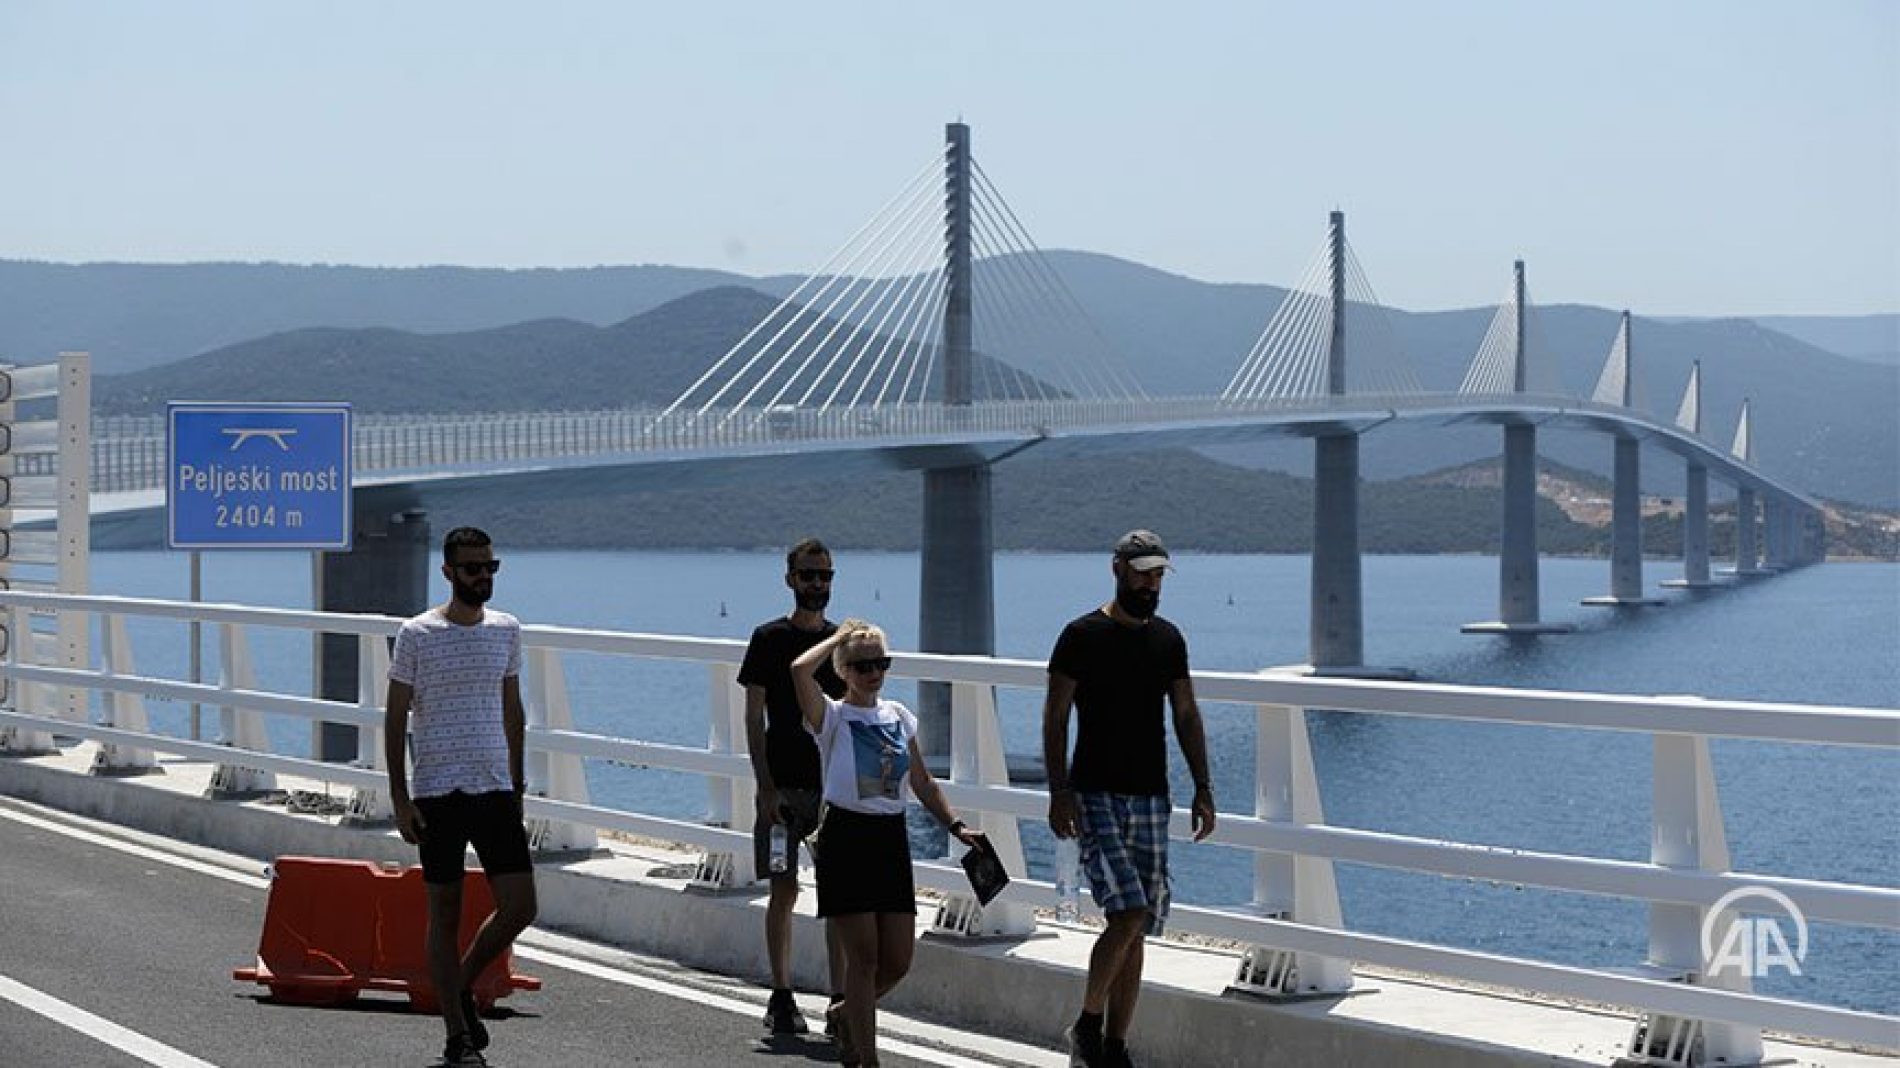 Otkriveno kako je Hrvatska dobila podršku EU i izlobirala Dodika vezano za Pelješki most. U Neumu tek sad zabrinuti